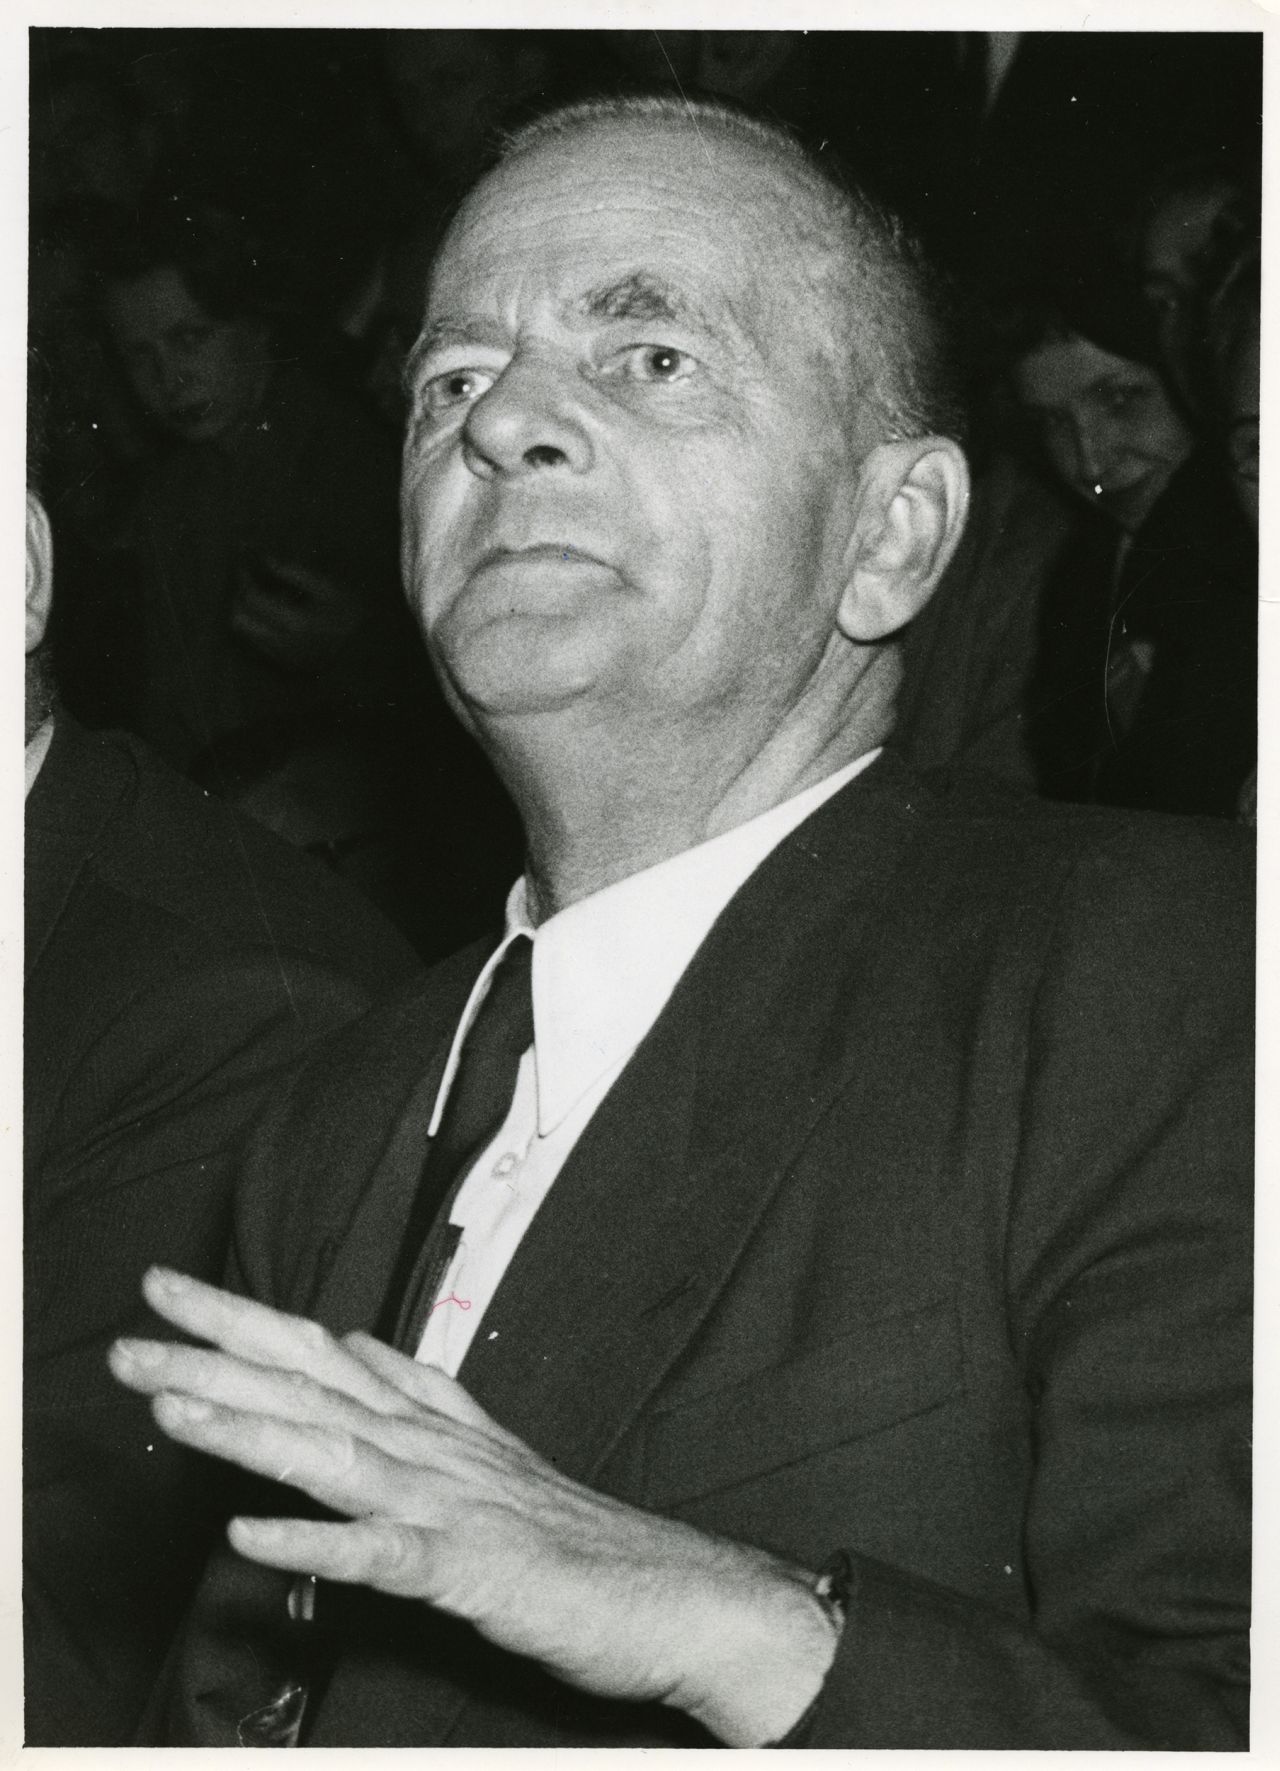 Porträt des Politkers Kurt Schumacher, der nach Kriegsende eine zentrale Rolle beim Wiederaufbau der SPD einnimmt.